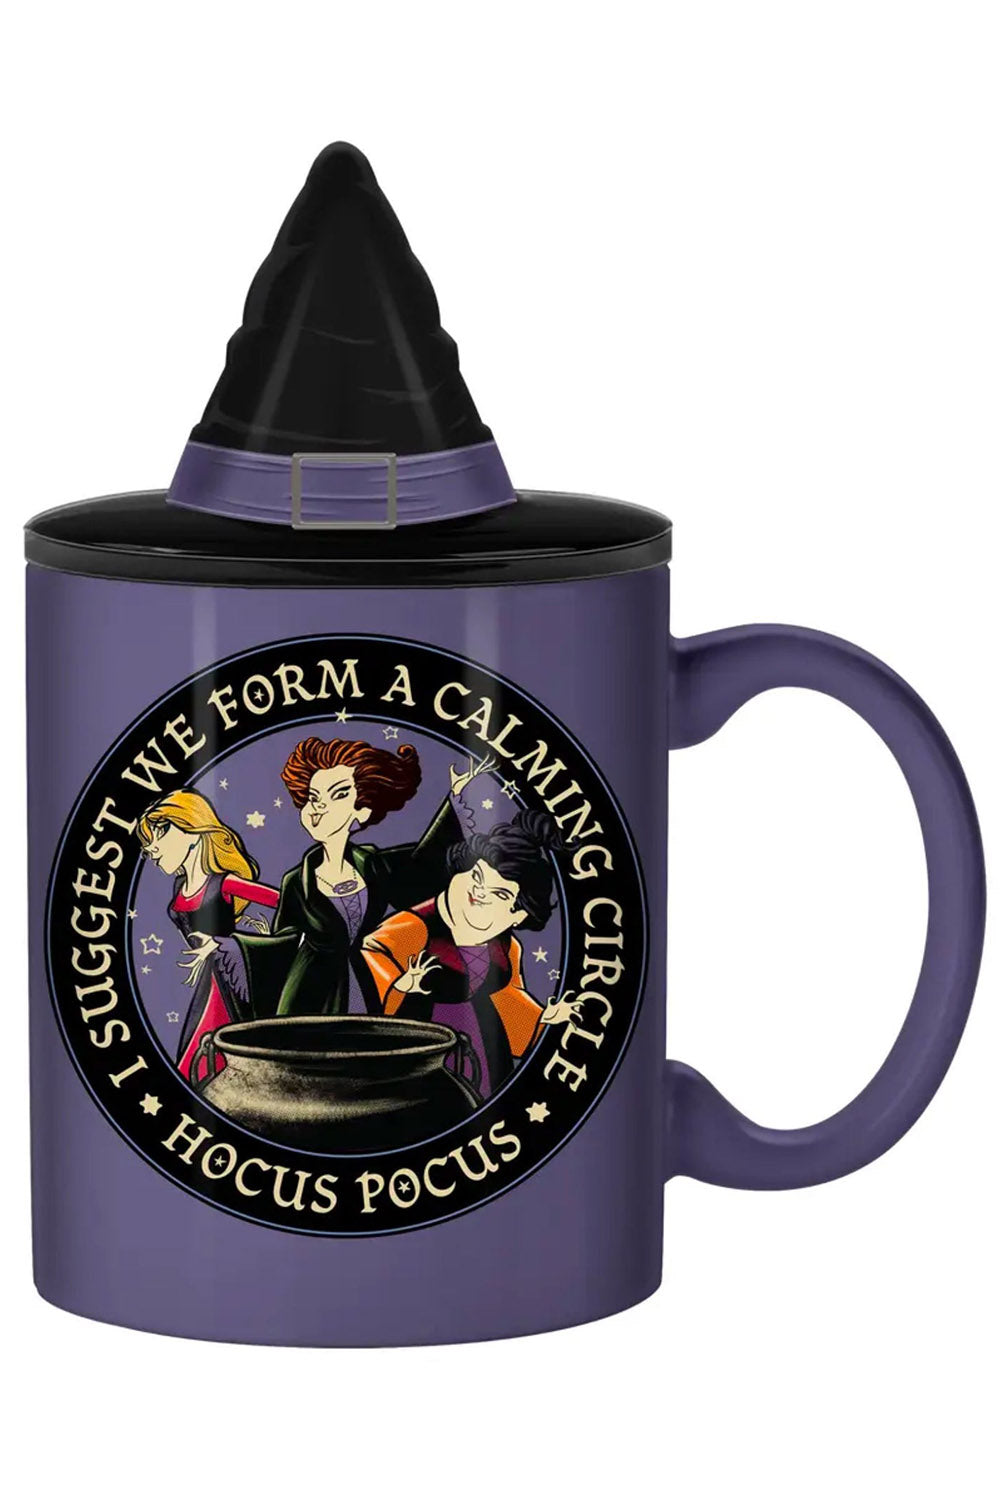 hocus pocus disney coffee mug